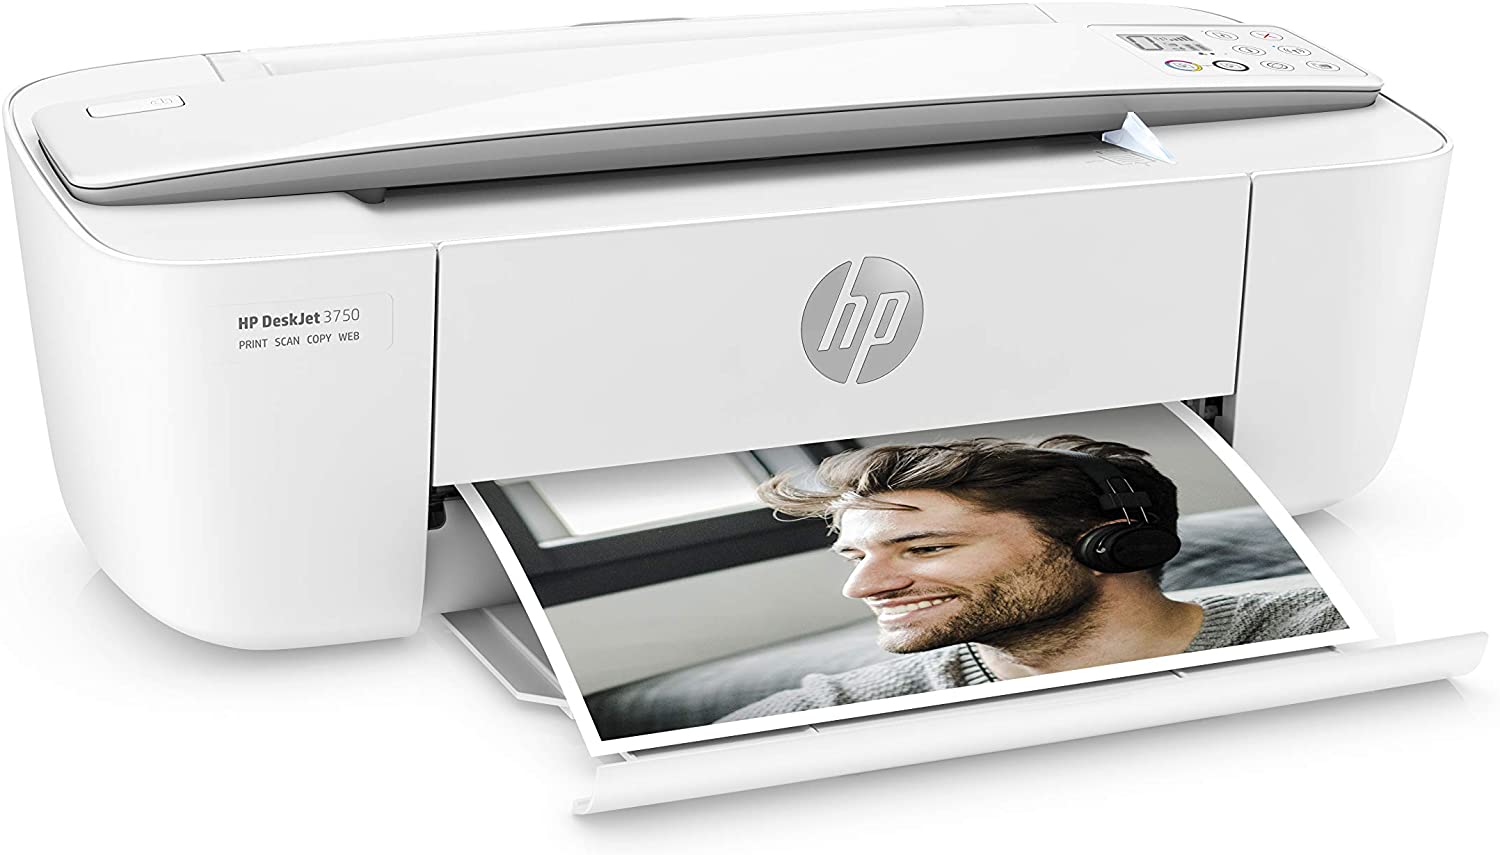 Wifi 3750 HP Deskjet Multifunktionsdrucker White